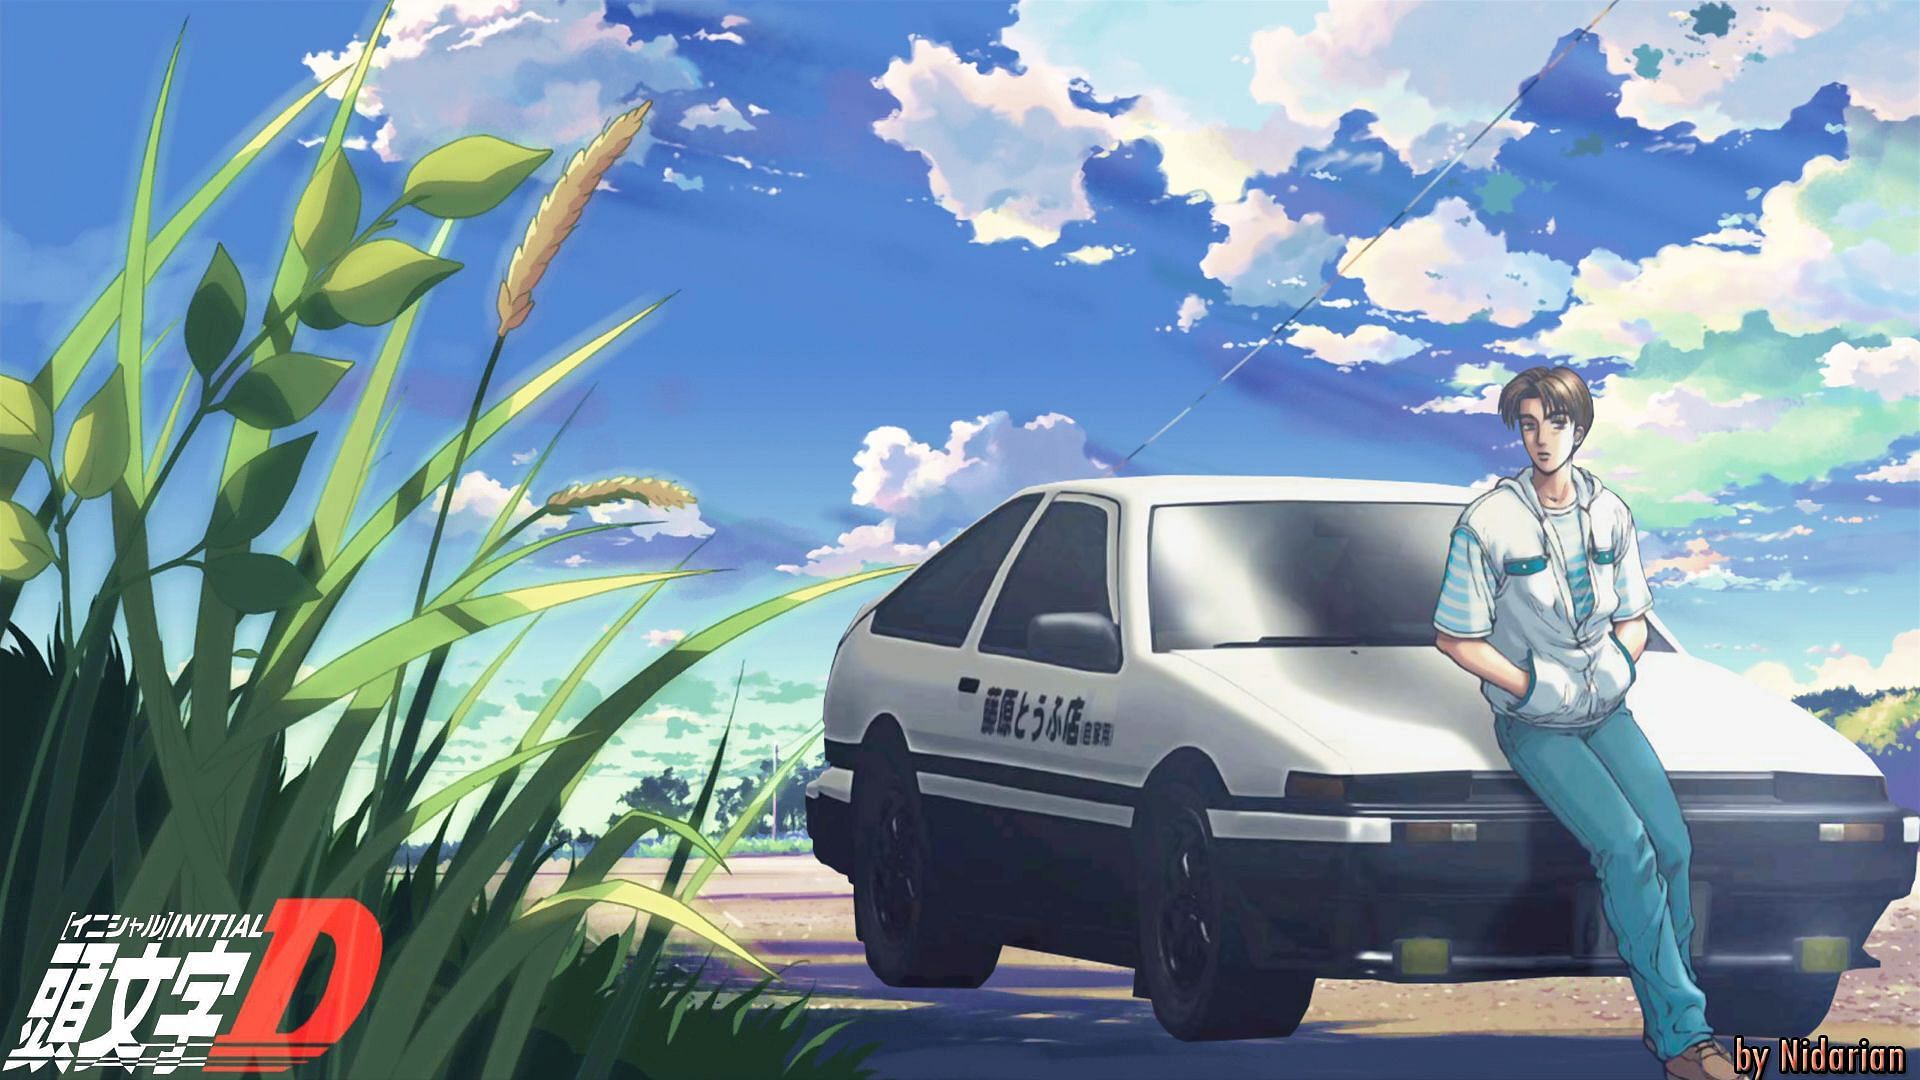 Fanart of Takumi and his car in Initial-D (Image via Nidarian/DeviantArt)